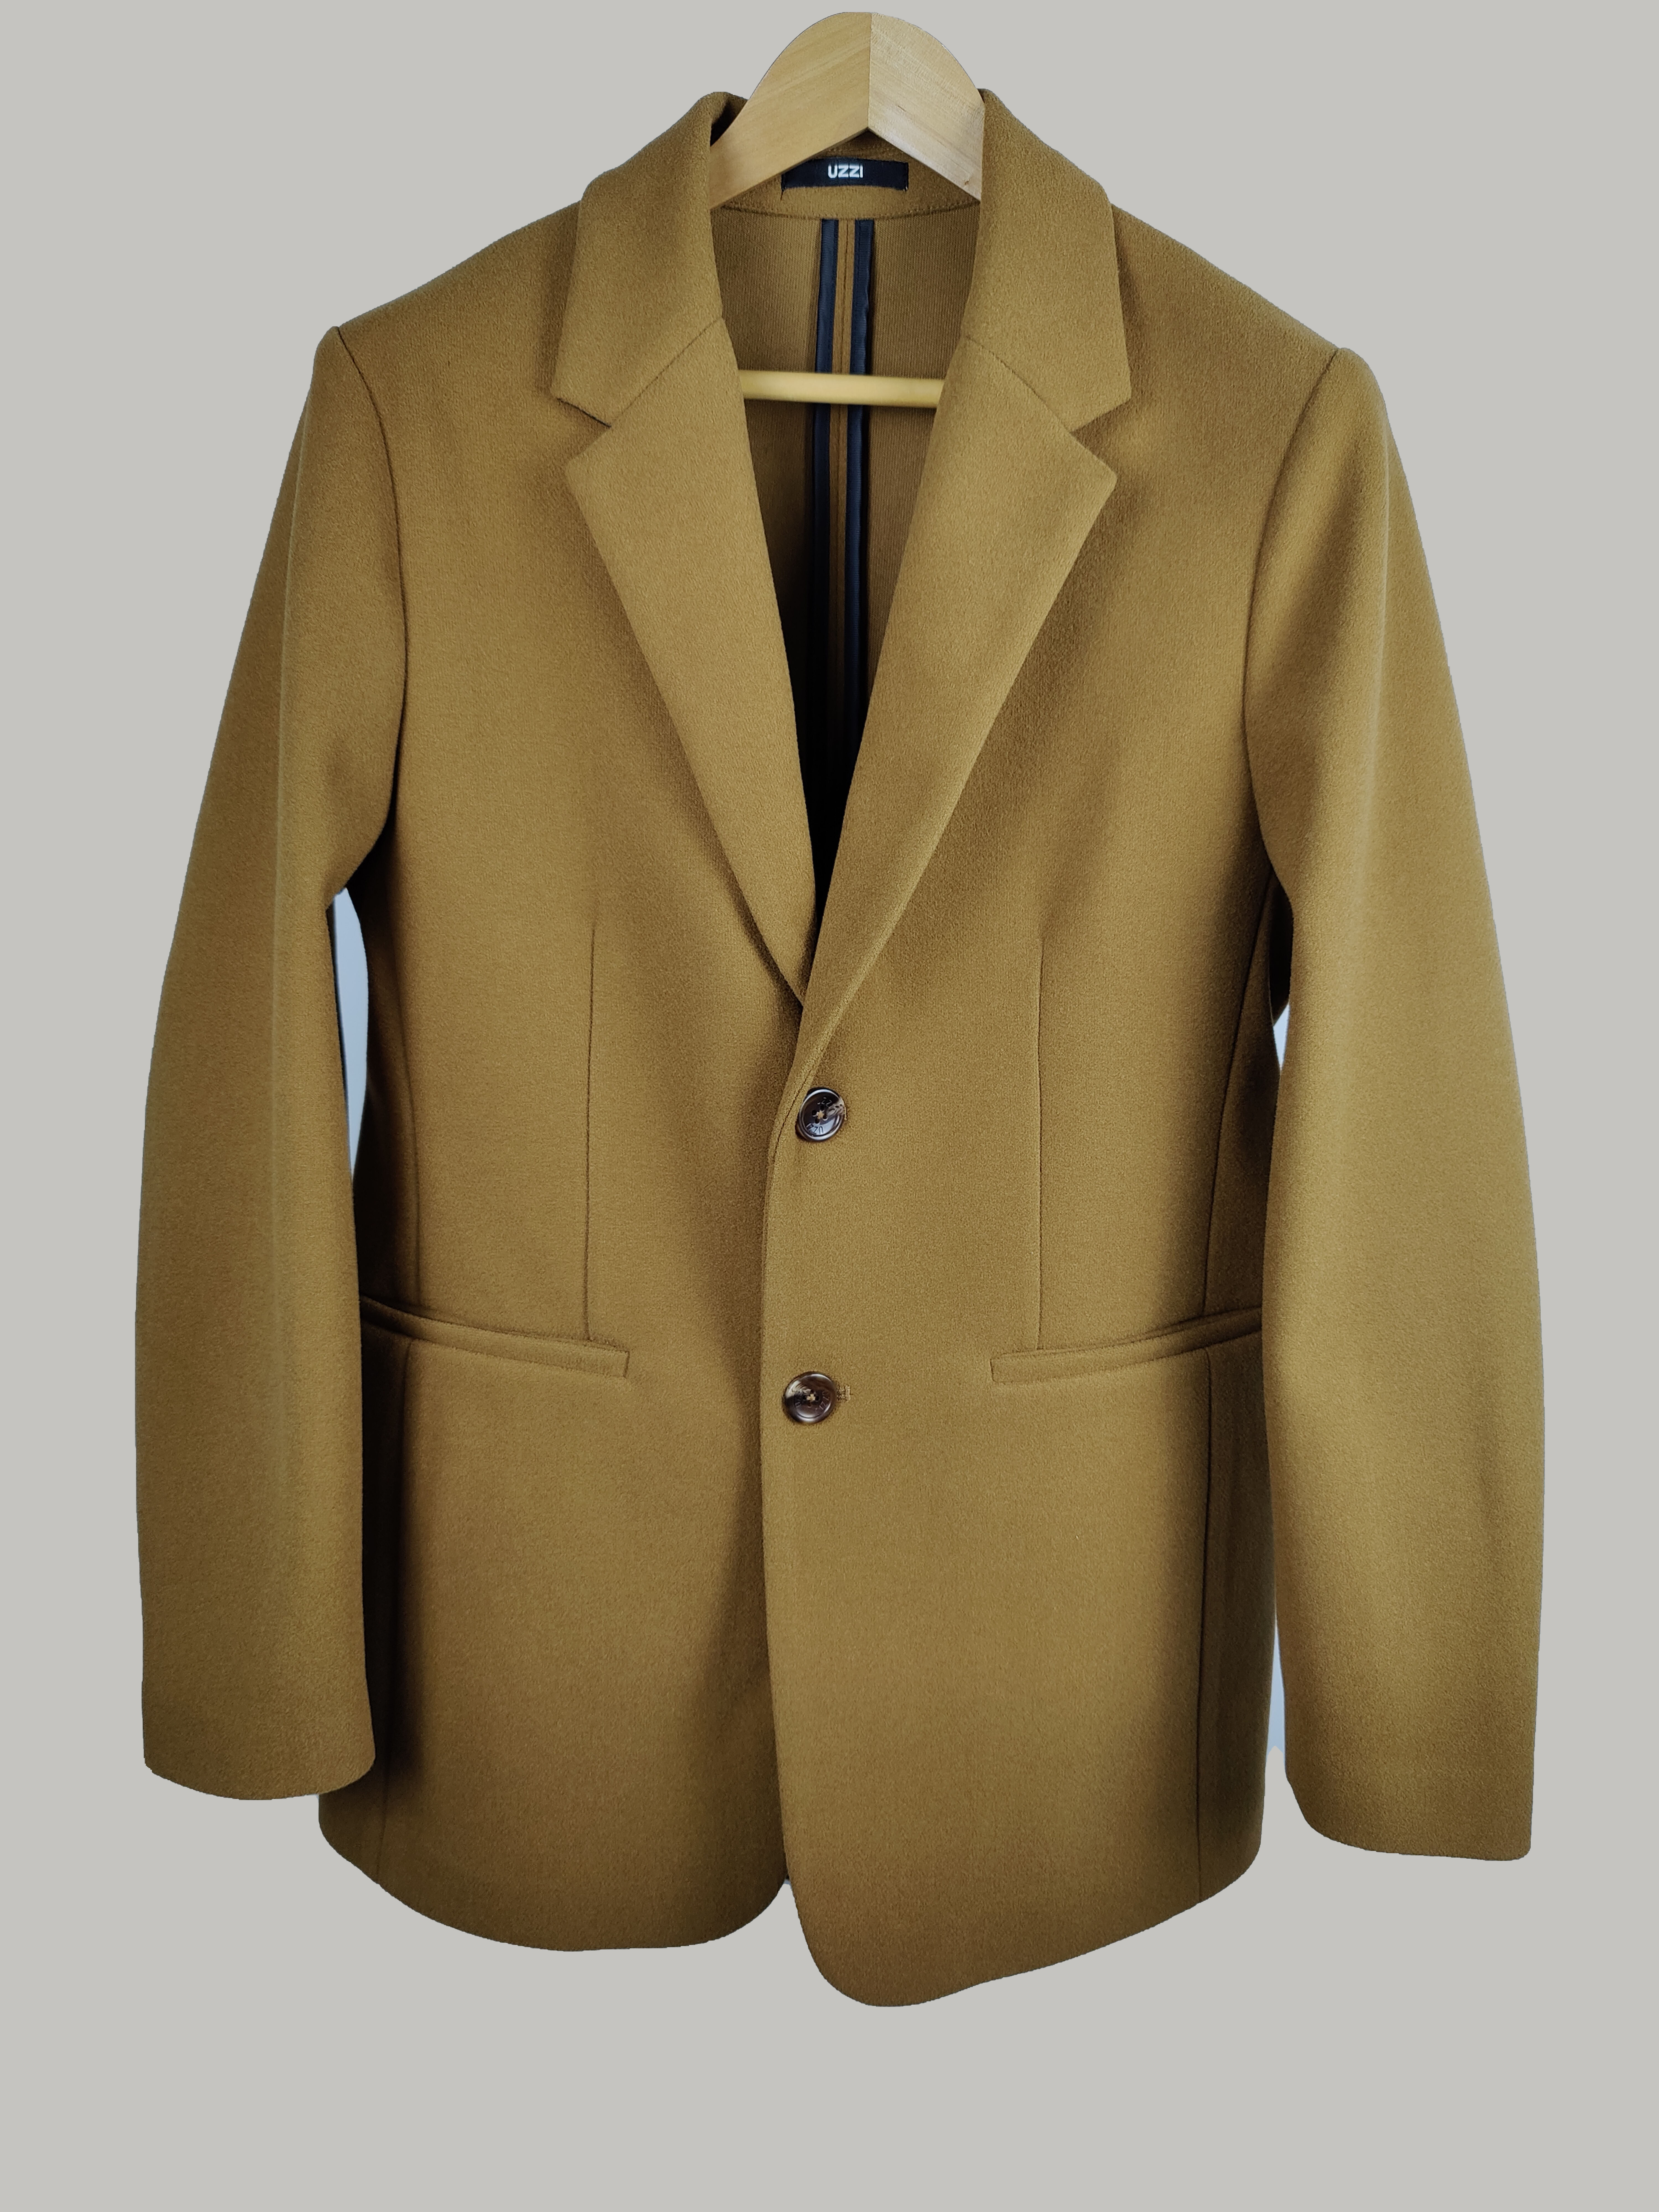 Fashion Mens Camel Color Melton Suit Jacket Men Coat Blazer